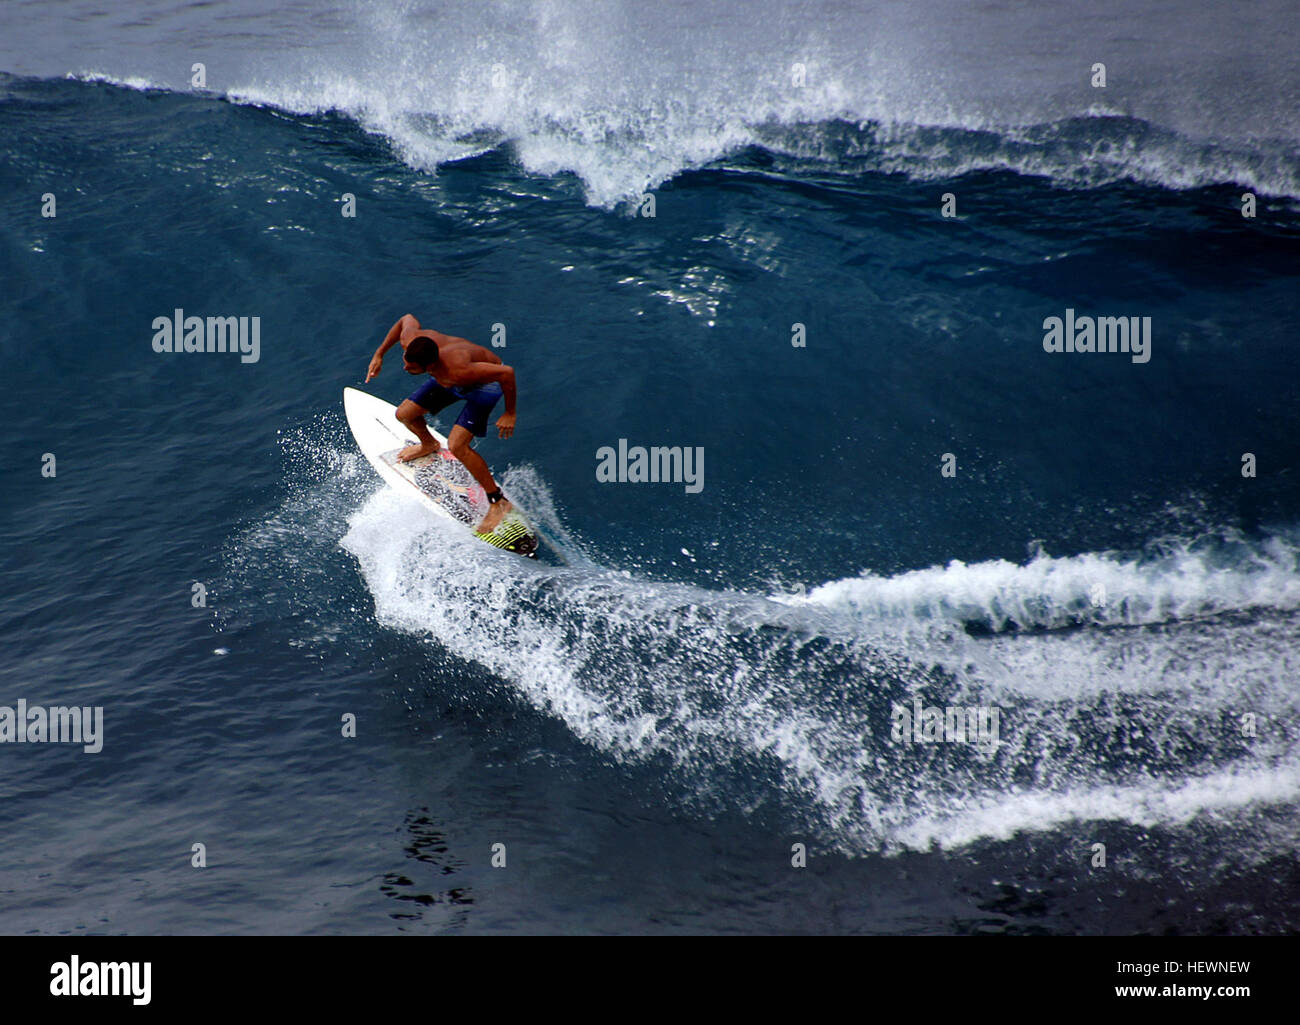 Tutti conoscono la maui surf - abbiamo visto tutti incredibili video dove pro surf big wave "Maui ganasce." Ma è quello di imparare a fare surf a Maui sicuro? Ci puoi scommettere! Chiunque può imparare surf in Maui. La navigazione è divertente, facile e grande esercizio per tutto il corpo e tutta la famiglia! Foto Stock